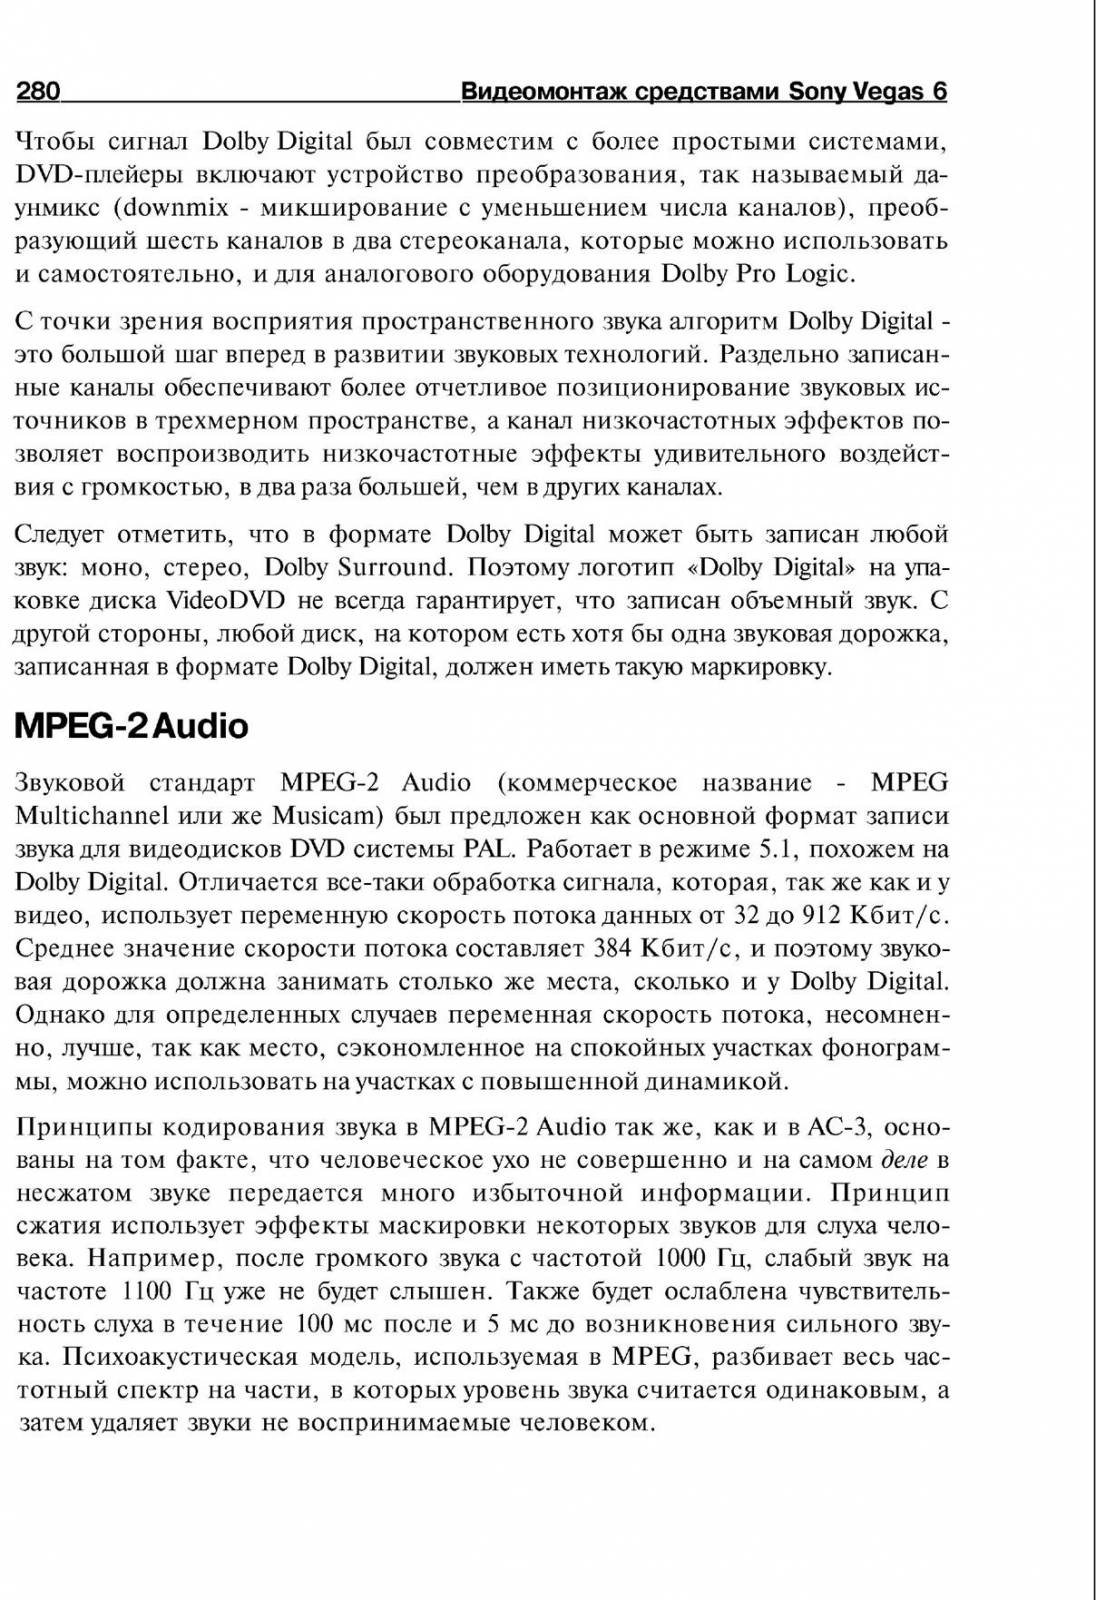 http://redaktori-uroki.3dn.ru/_ph/14/59268112.jpg